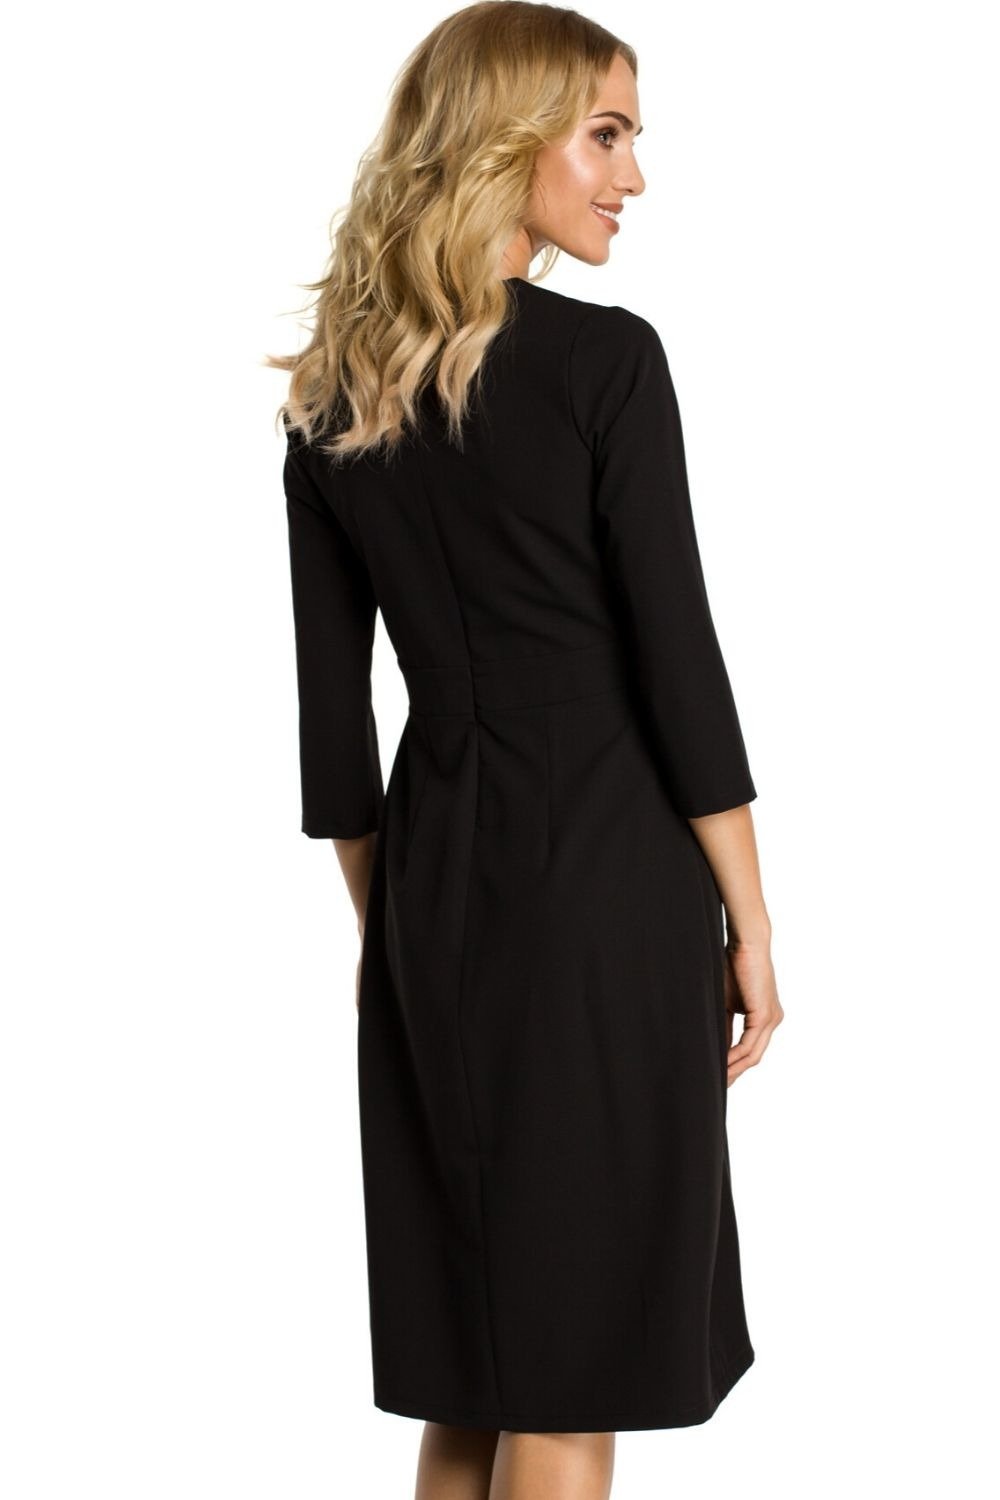 Opis: Sukienka elegancka rozkloszowana z zakładkami modelujące szwy czarna.